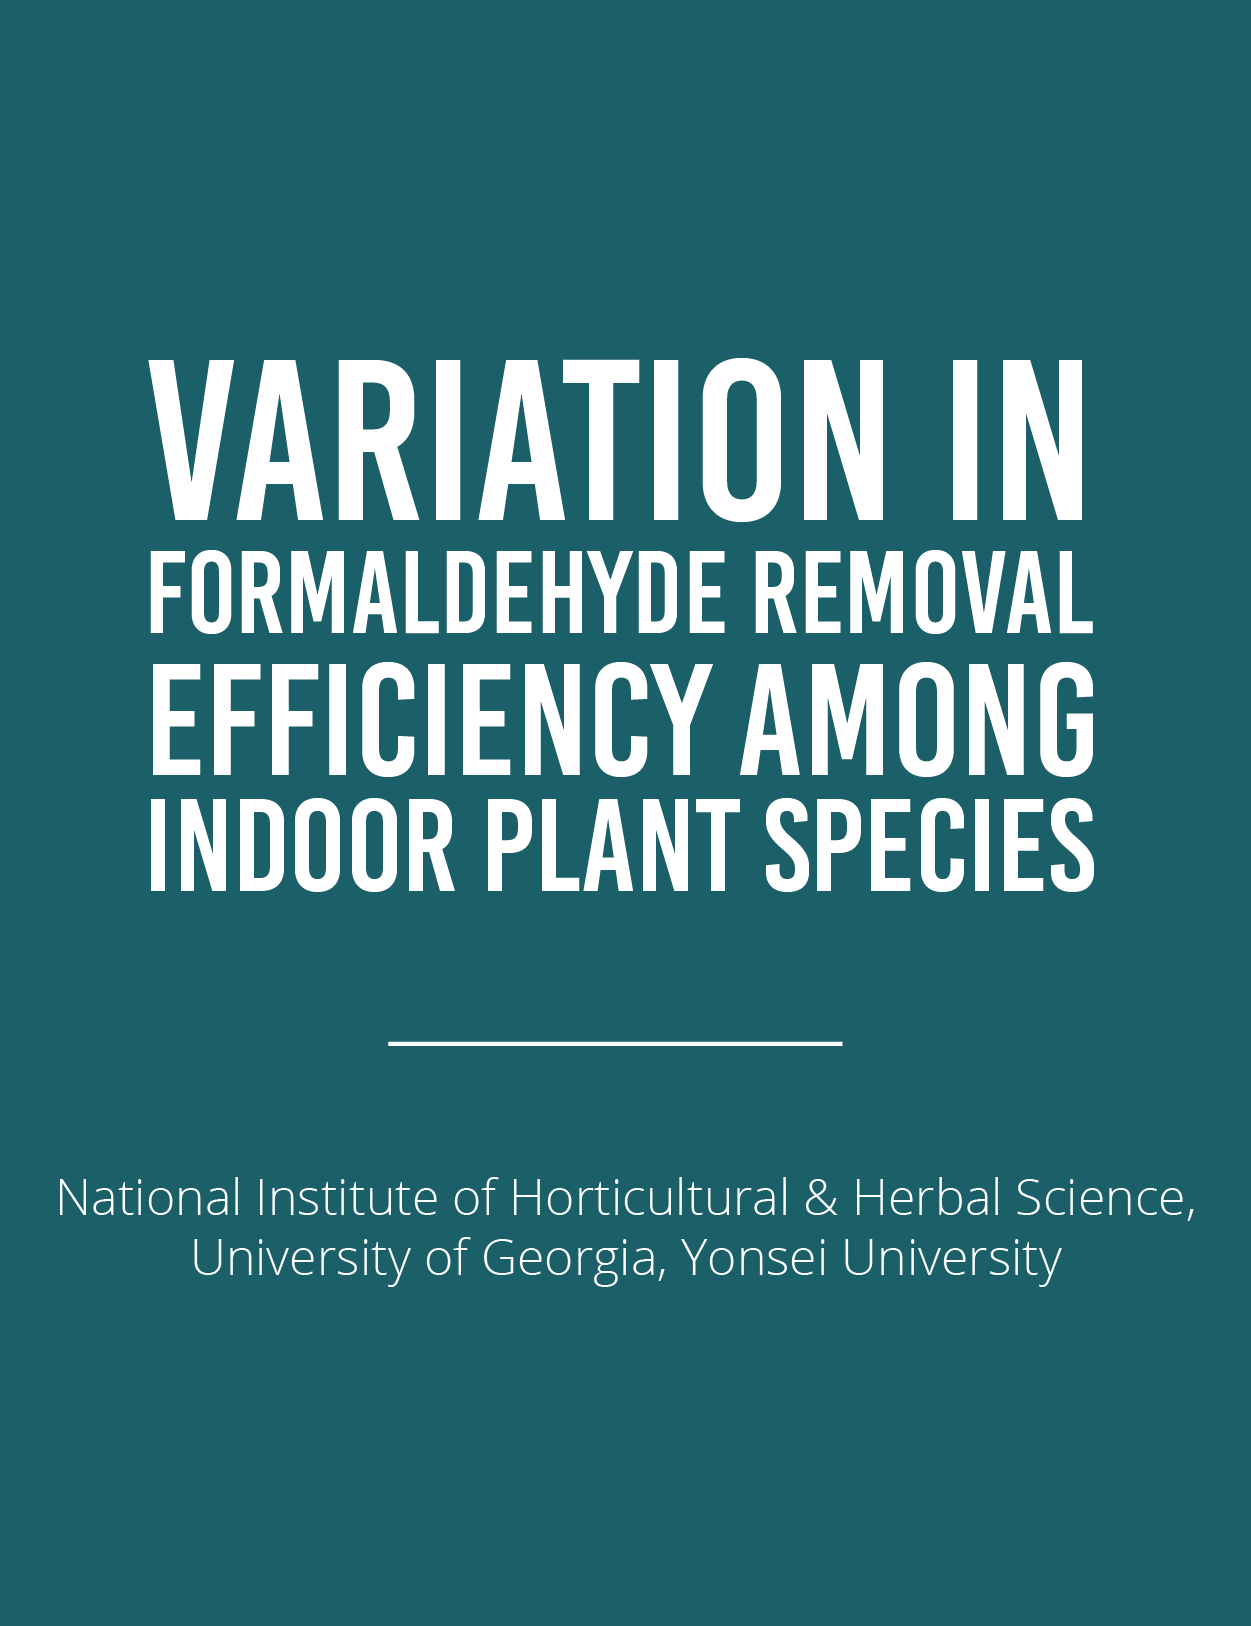 Formaldehyde Removal Efficiency & Indoor Plant SpeciesFeatured Image